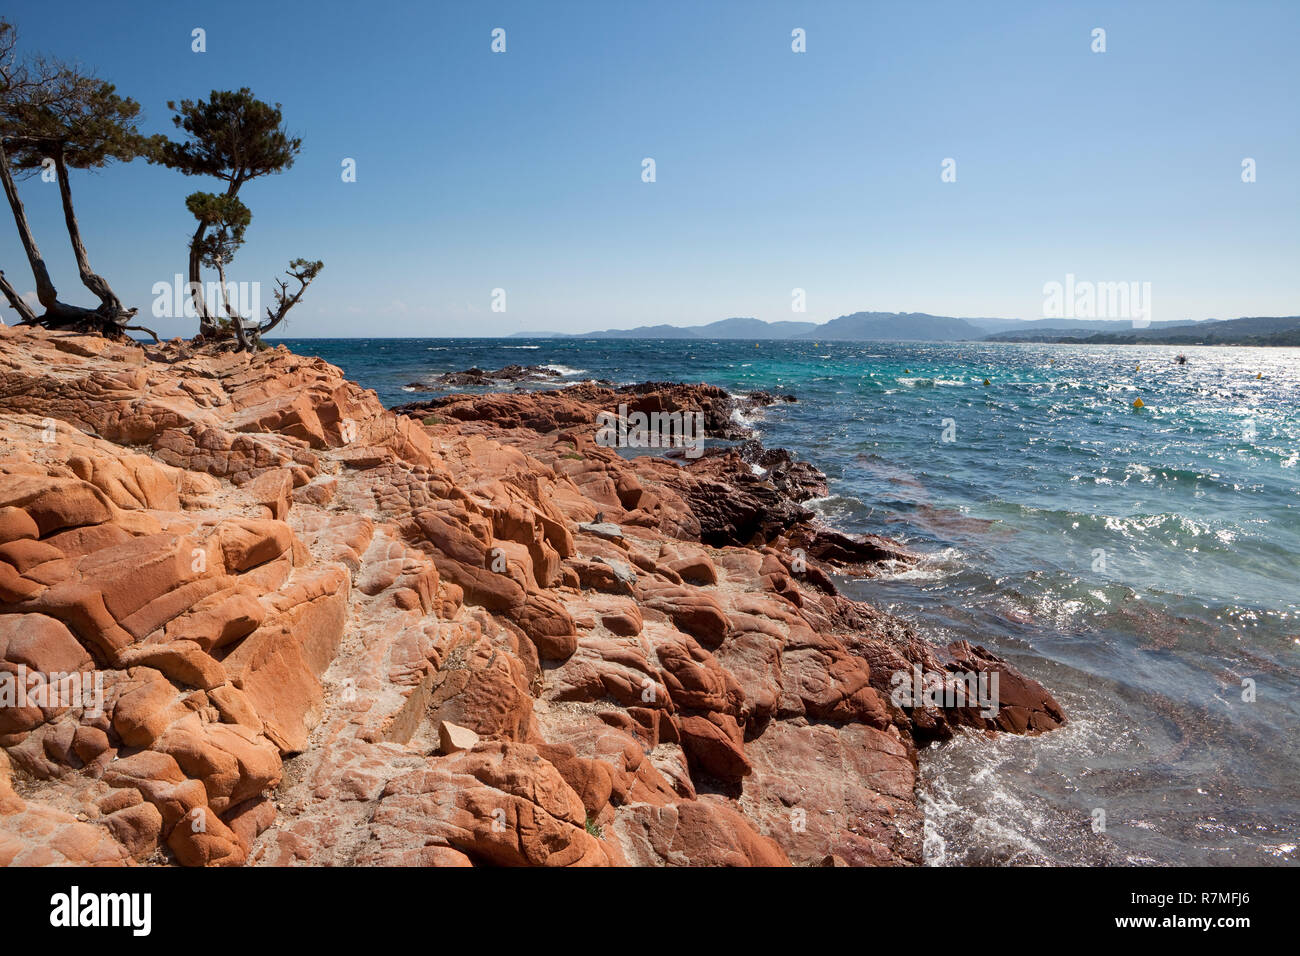 Die typischen roten Felsen von Palombaggia Strand auf der Insel Korsika. Berge von Süden Korsika im Hintergrund. Stockfoto